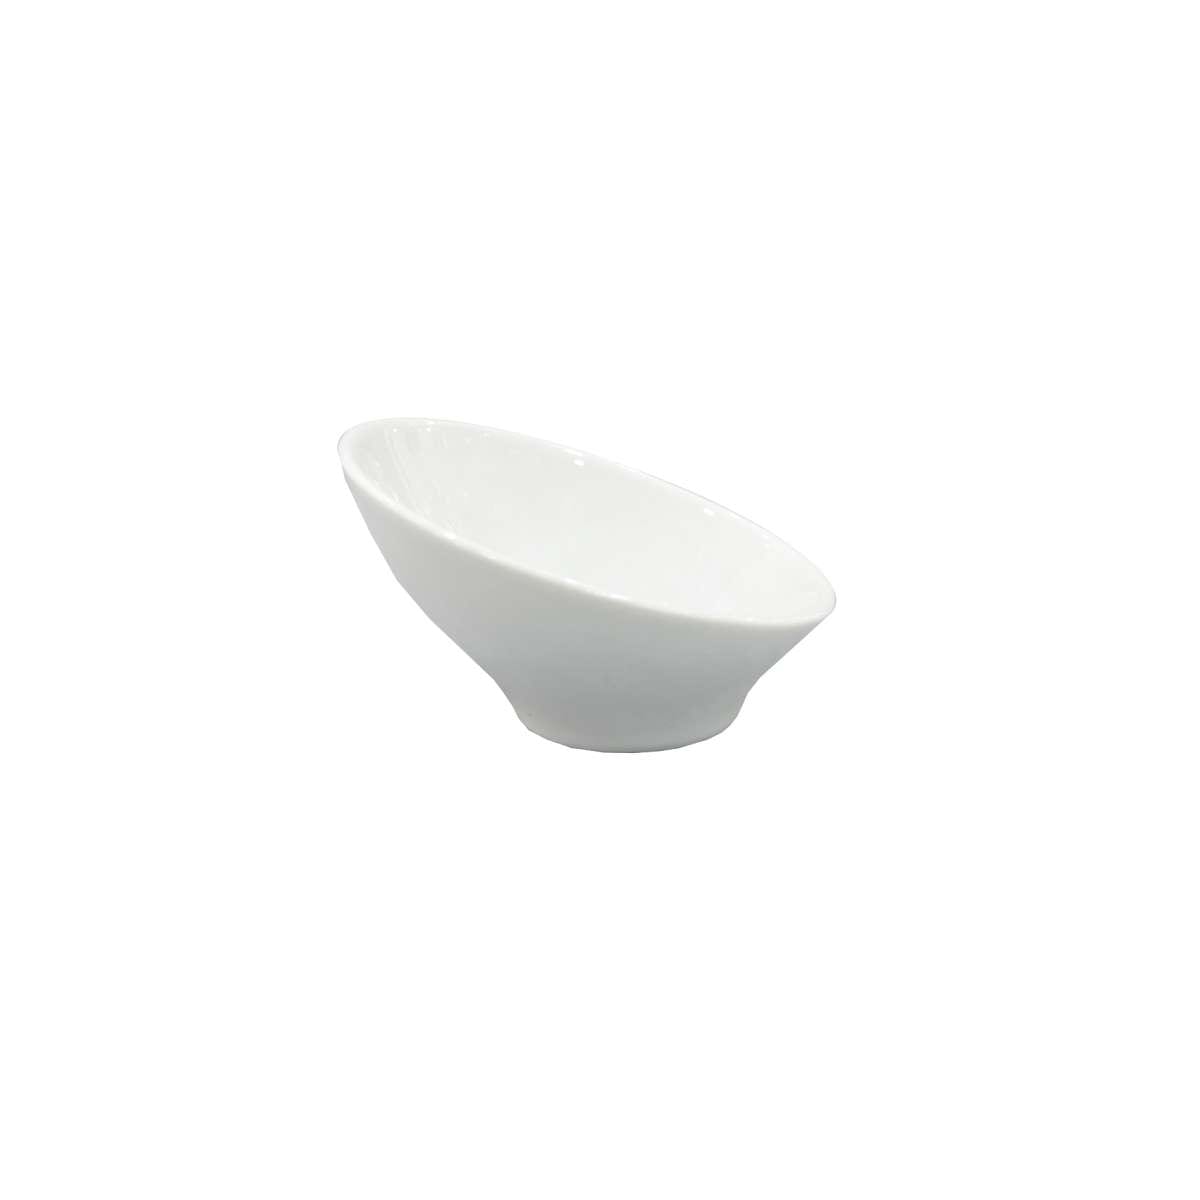 Μπωλ-Ντιπ Πορσελάνης Design Λευκό Art Et Lumiere 8,5×2,5/5εκ. 06930 (Σετ 4 Τεμάχια) (Υλικό: Πορσελάνη, Χρώμα: Λευκό) – Art Et Lumiere – lumiere_06930